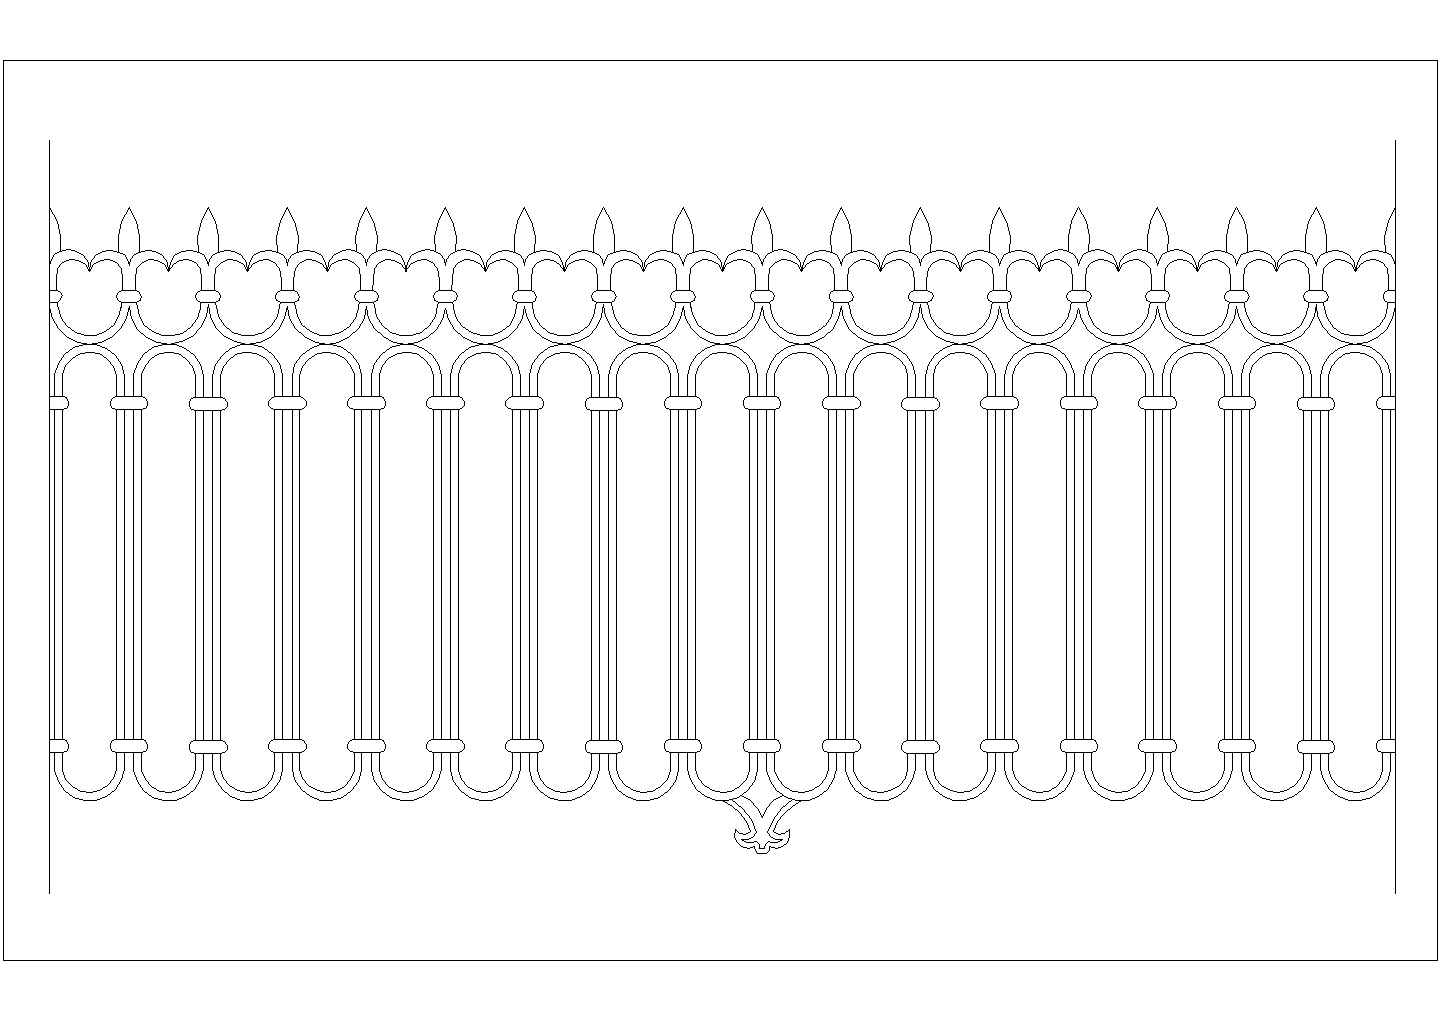 收集的各种形式的铁艺栏杆样式图库